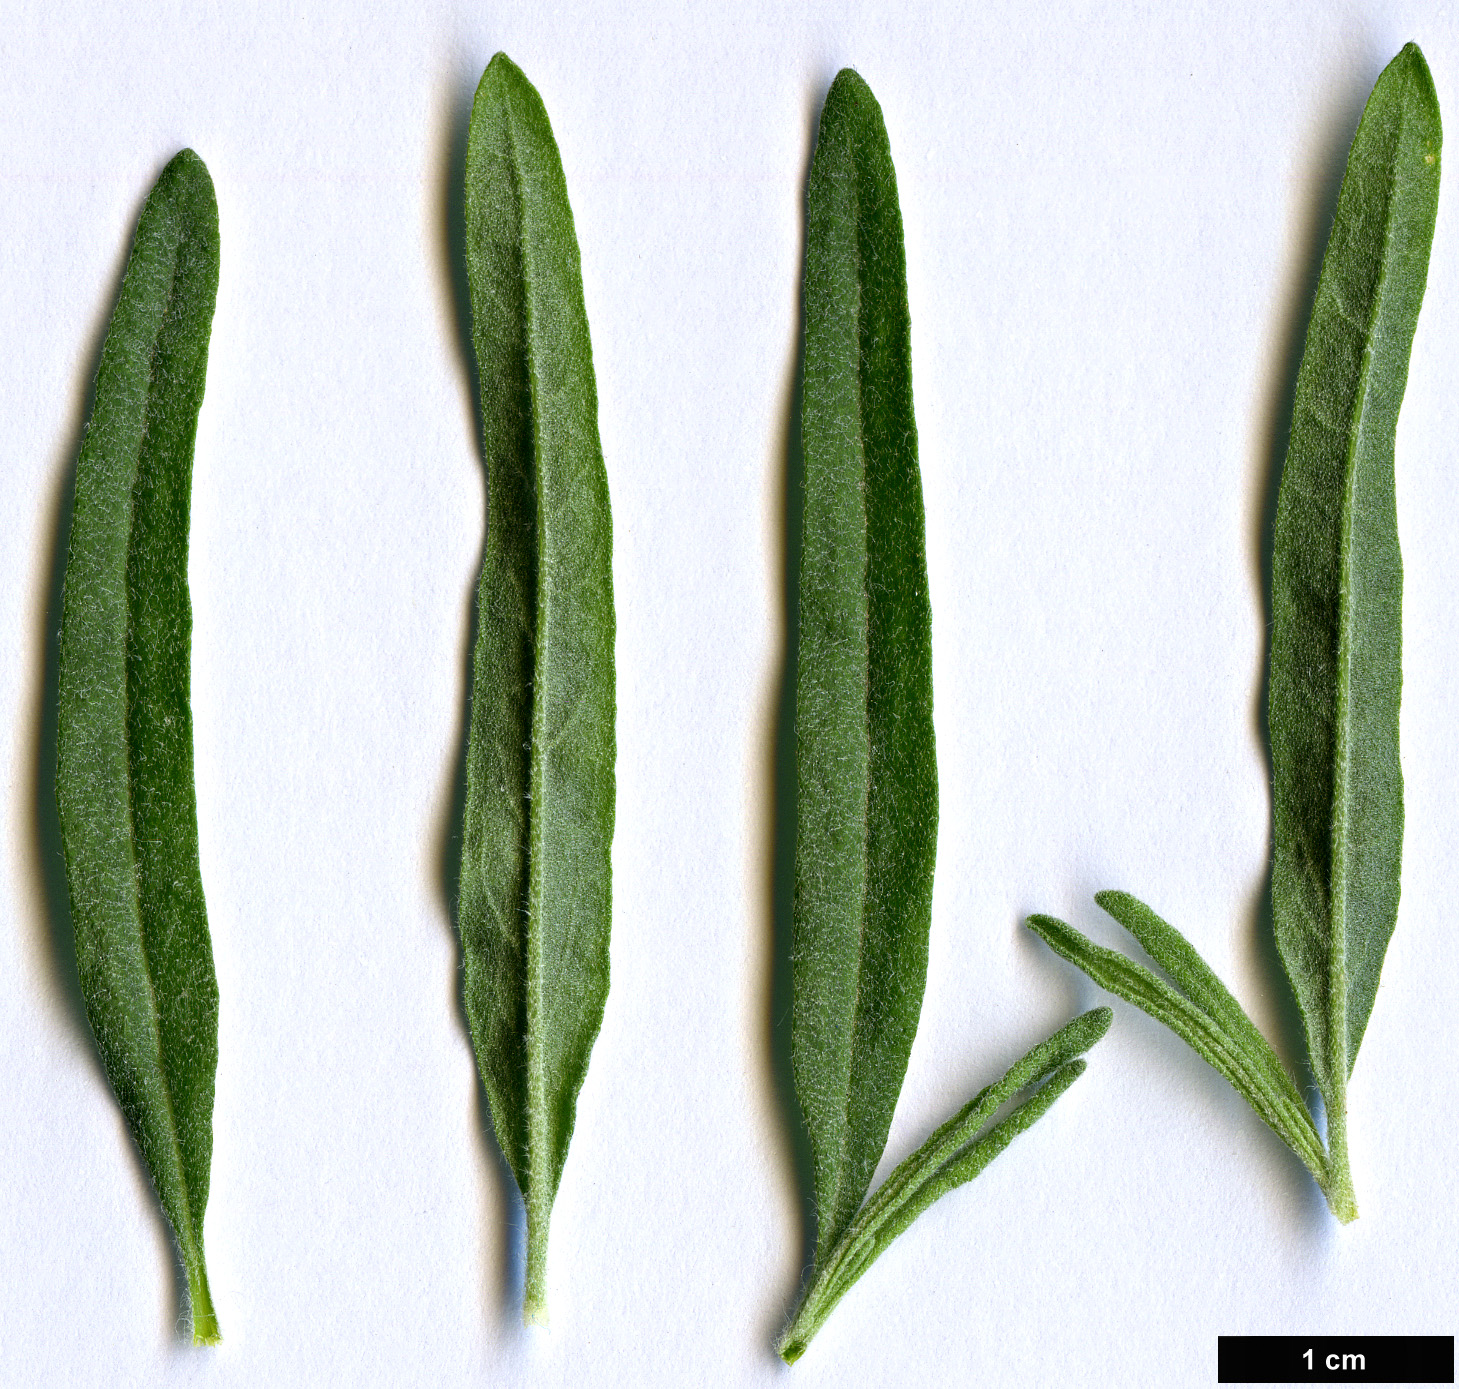 High resolution image: Family: Amaranthaceae - Genus: Krascheninnikovia - Taxon: ceratoides - SpeciesSub: subsp. lanata